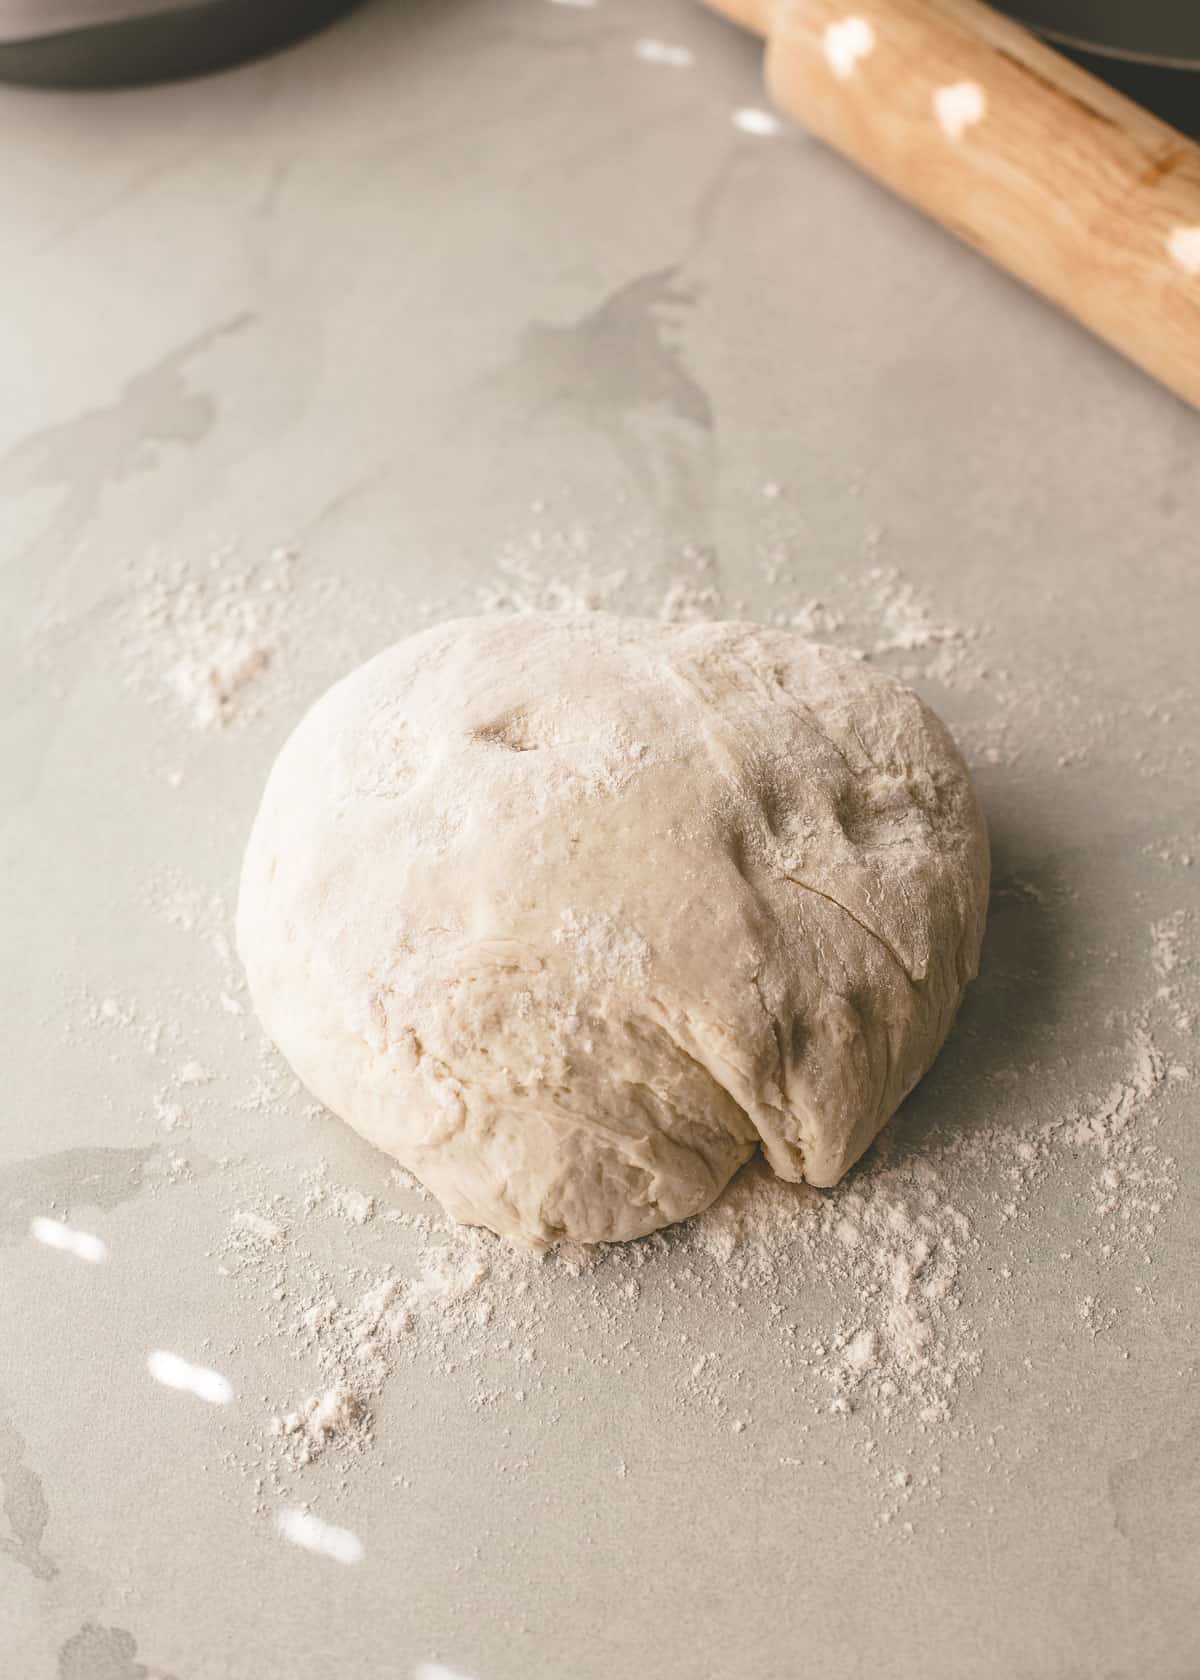 1 hour dough on a floured surface